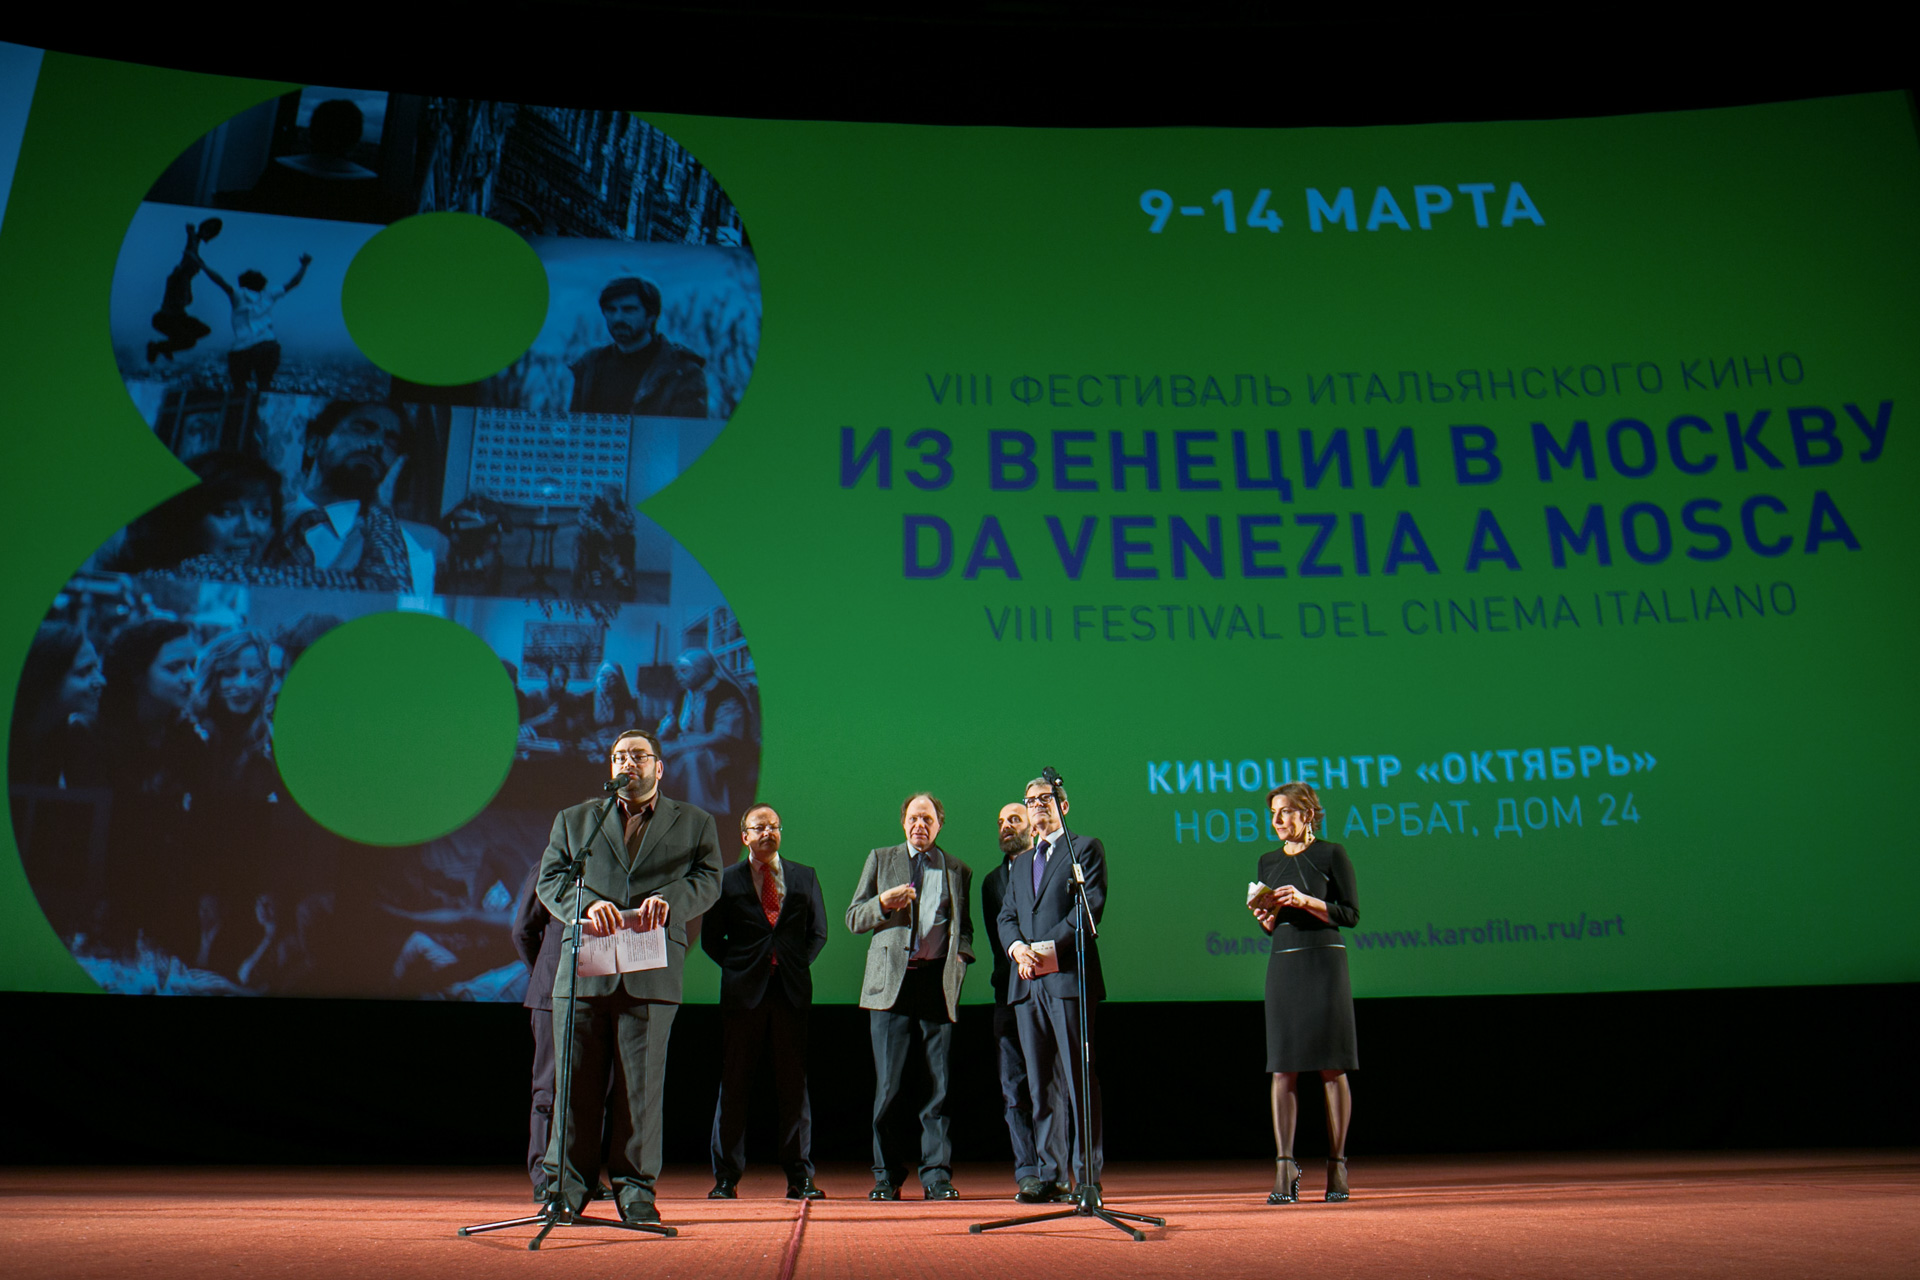 Dal 9 al 14 marzo il cinema Oktyabr di Mosca ospiterà l’ottava edizione del festival “Da Venezia a Mosca” / Nella foto, gli organizzatori presentano il film “Questi giorni” di Giuseppe Piccioni, che ha aperto la kermesse 